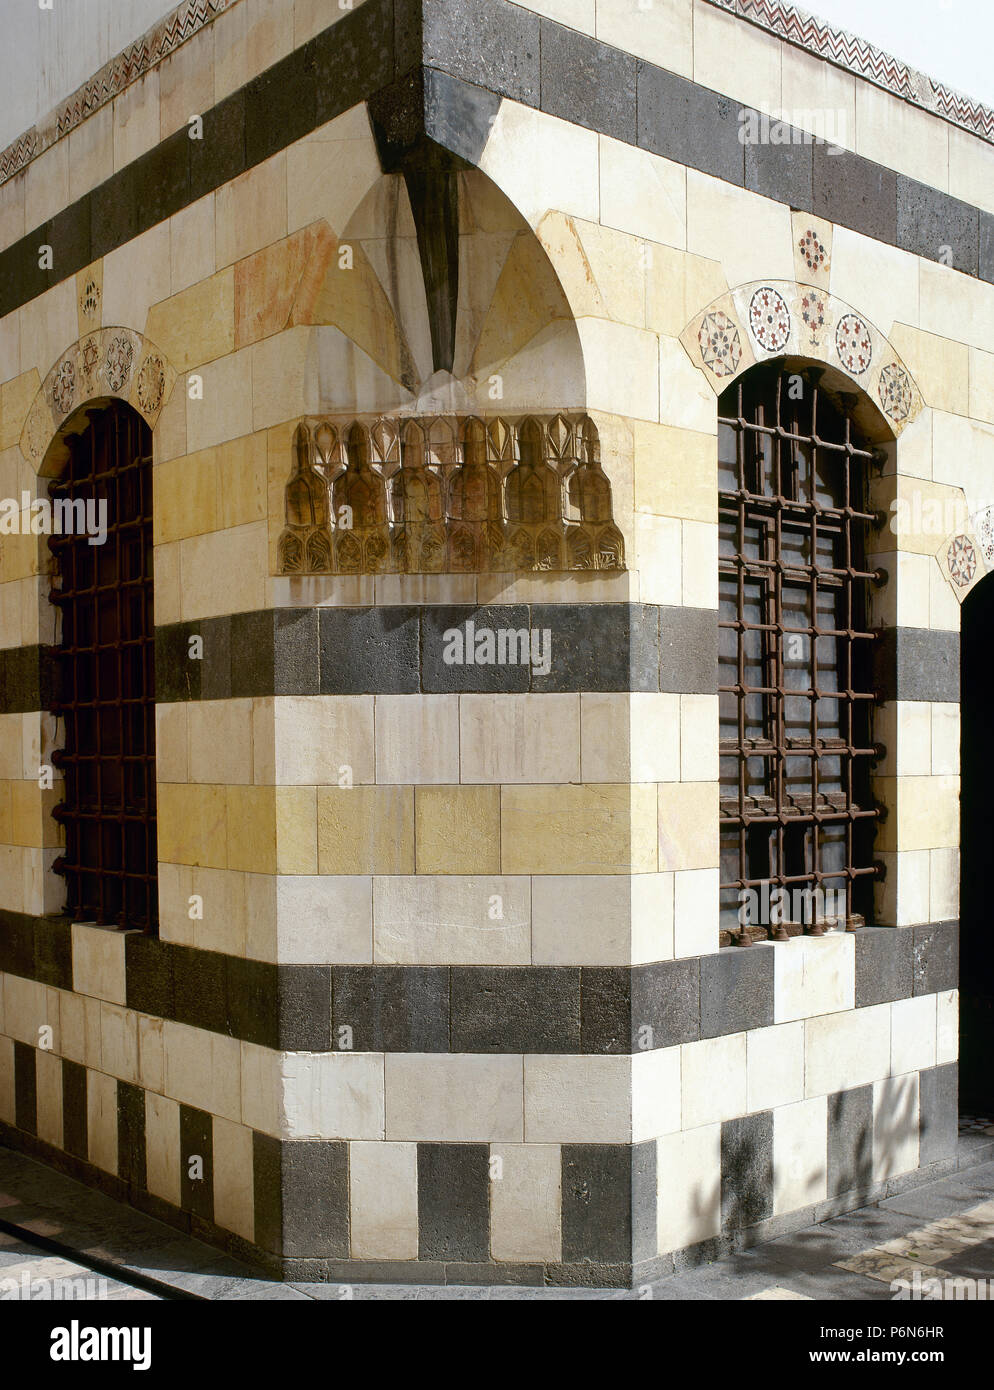 La Siria. Damasco. (Antica città). Azam Palace. Essa fu costruita nel 1749-1752. Residenza privata per un'ad Pasha al-Azm, governatore di Damasco. Stile ottomano. Dettagli architettonici. Muratura in pietra della facciata. Foto Stock